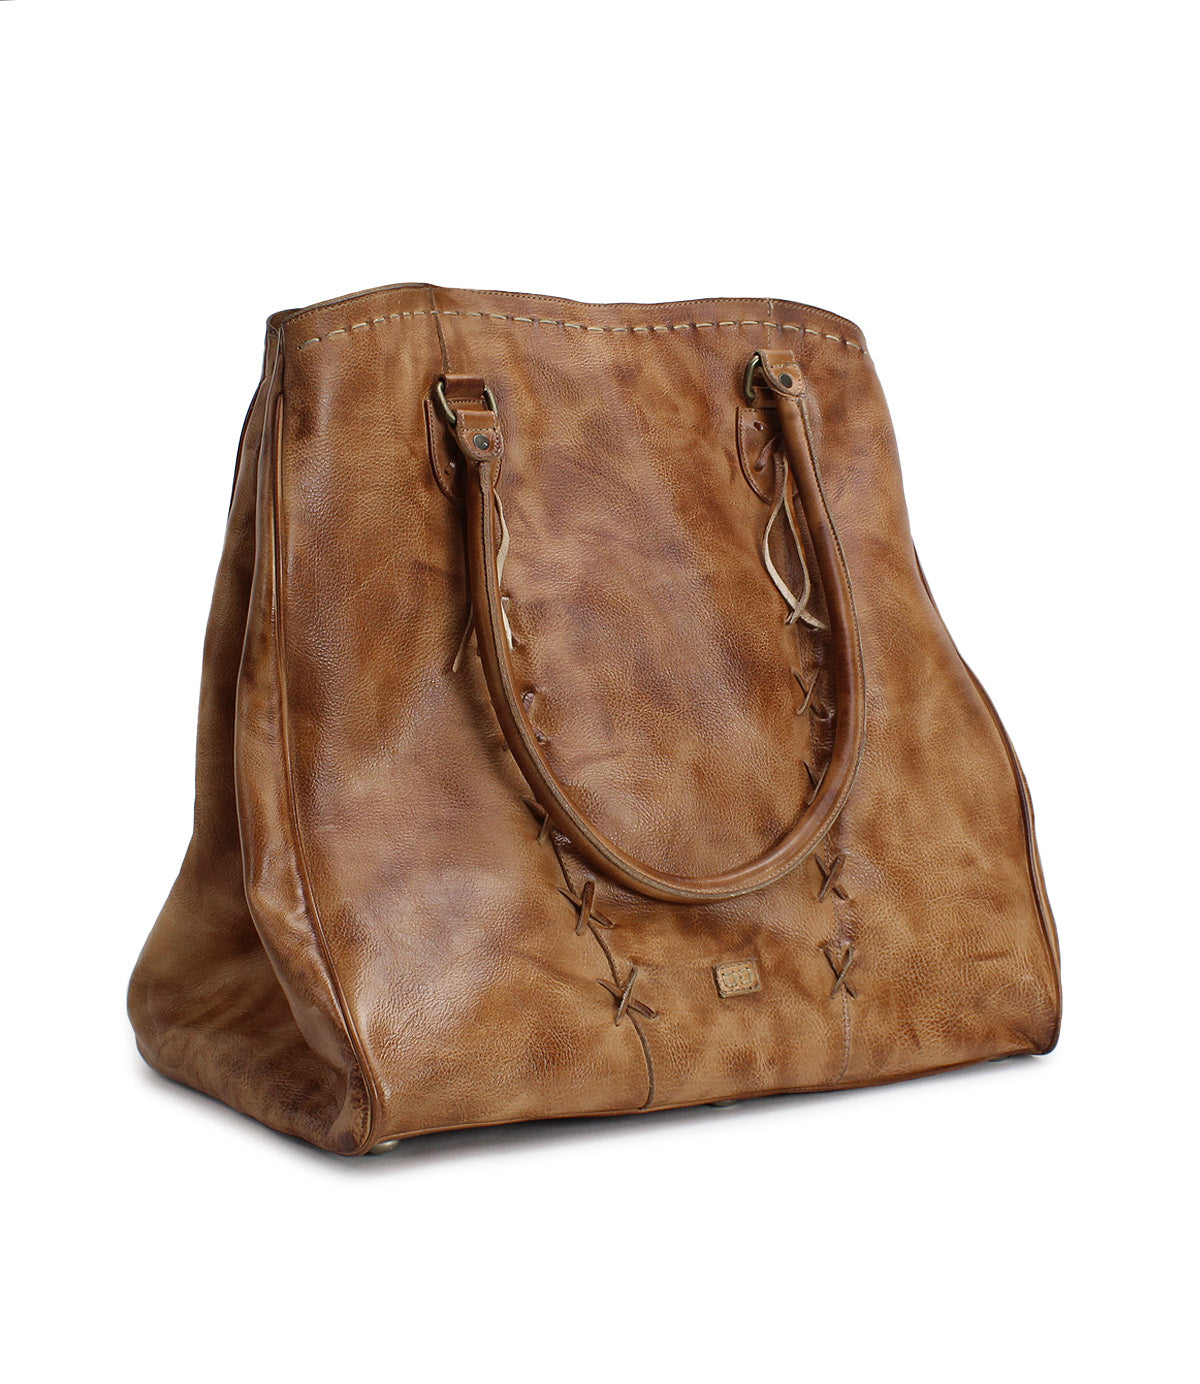 A Bed Stu Rebekah brown leather tote bag.